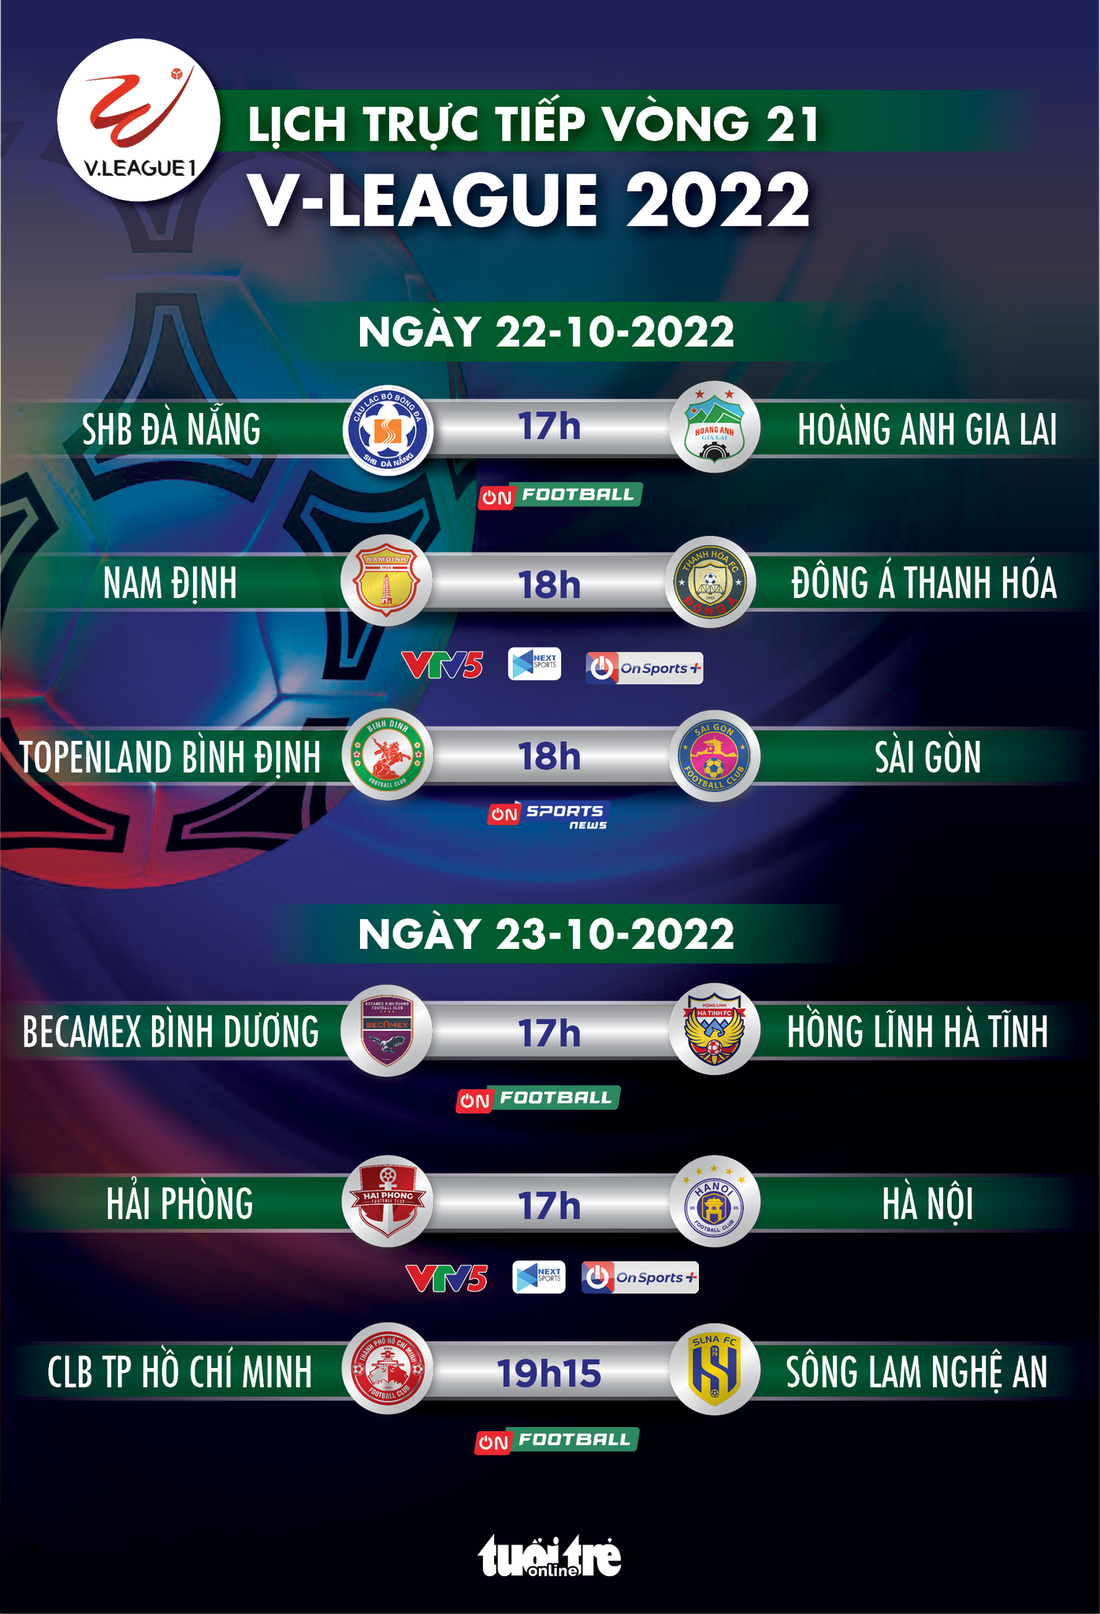 Lịch trực tiếp vòng 21 V-League 2022: Bình Định - Sài Gòn, Hải Phòng - Hà Nội - Ảnh 1.